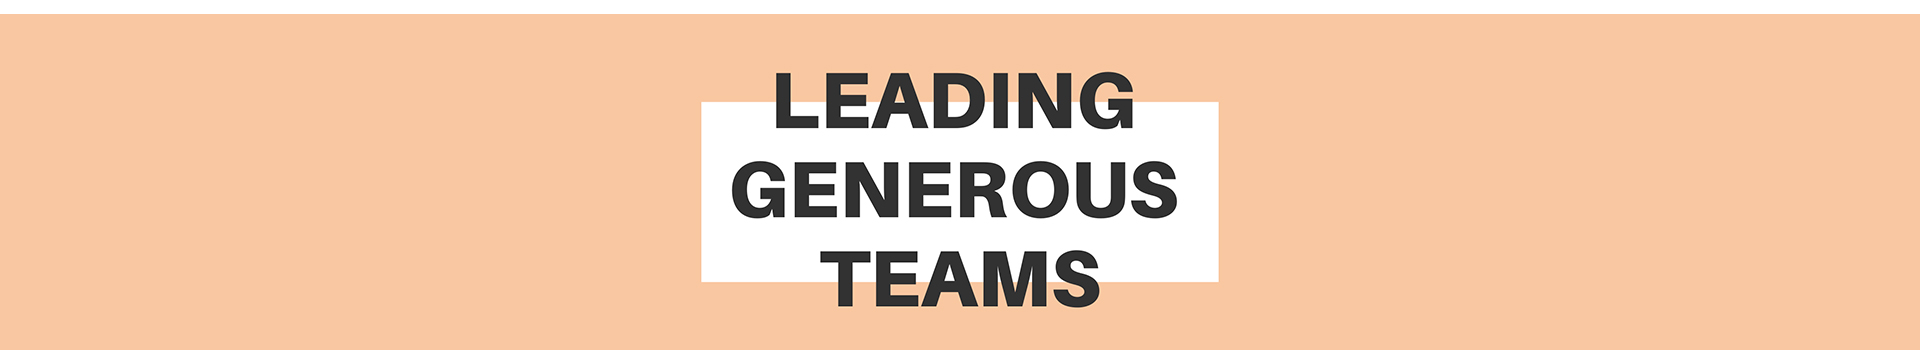 Leading Generous Teams banner